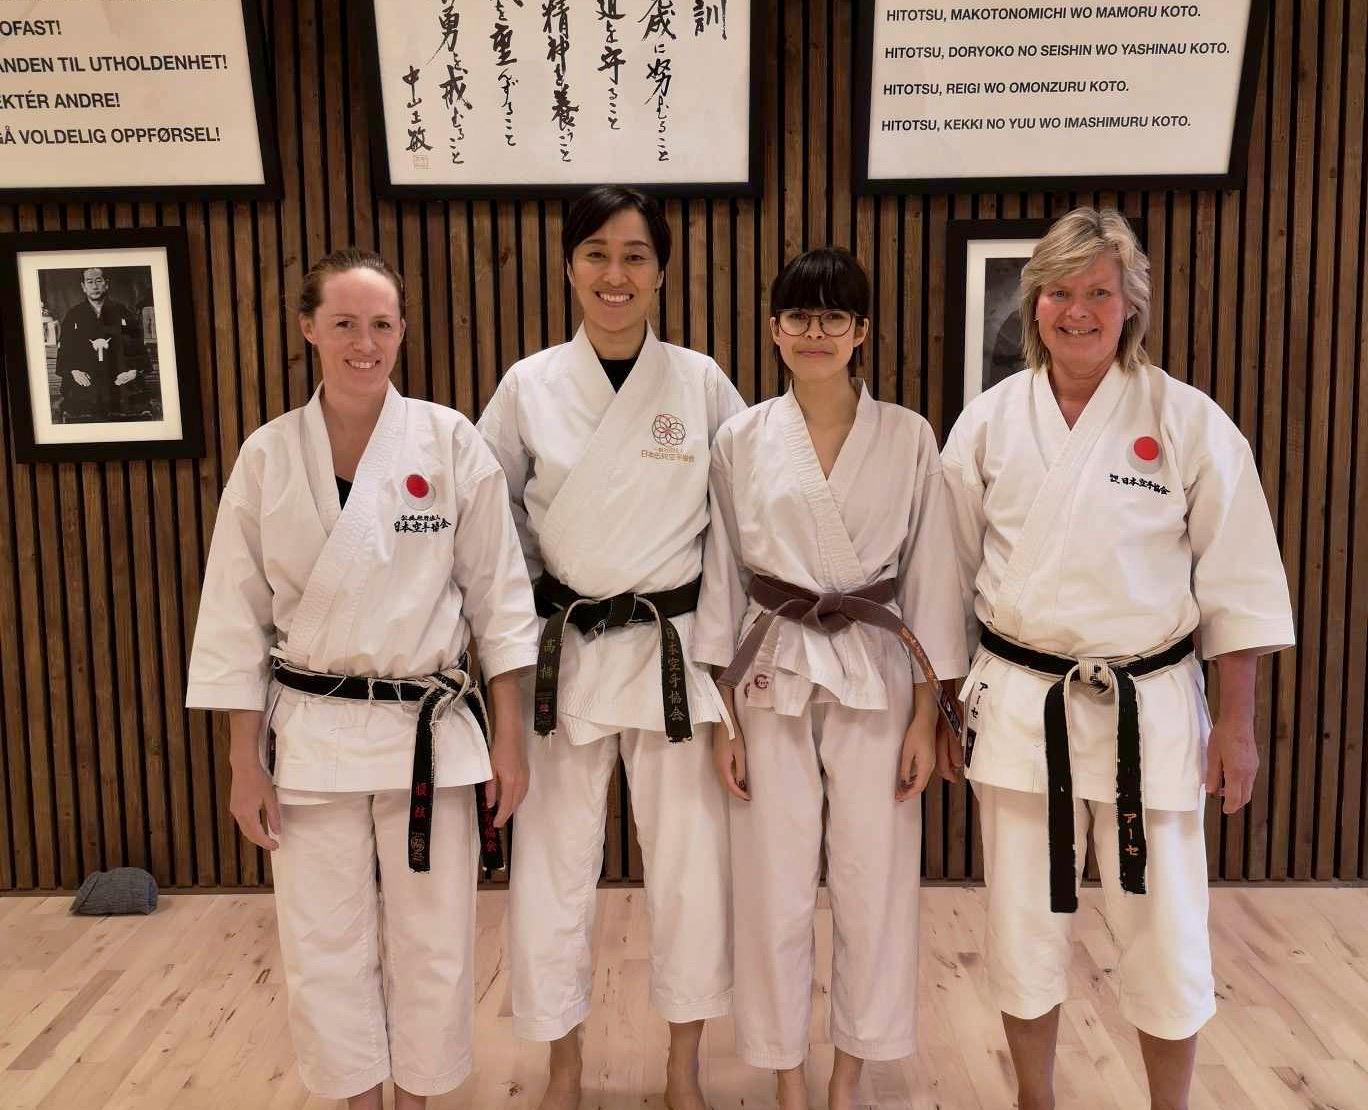 Randaberg karateklubb har vært på kvinnesamling. Linn Catrin Viste, Yuko Takahashi, Maria Amelia Helland og Åse Grinde Brekke. Takahashi er tidligere verdensmester. 